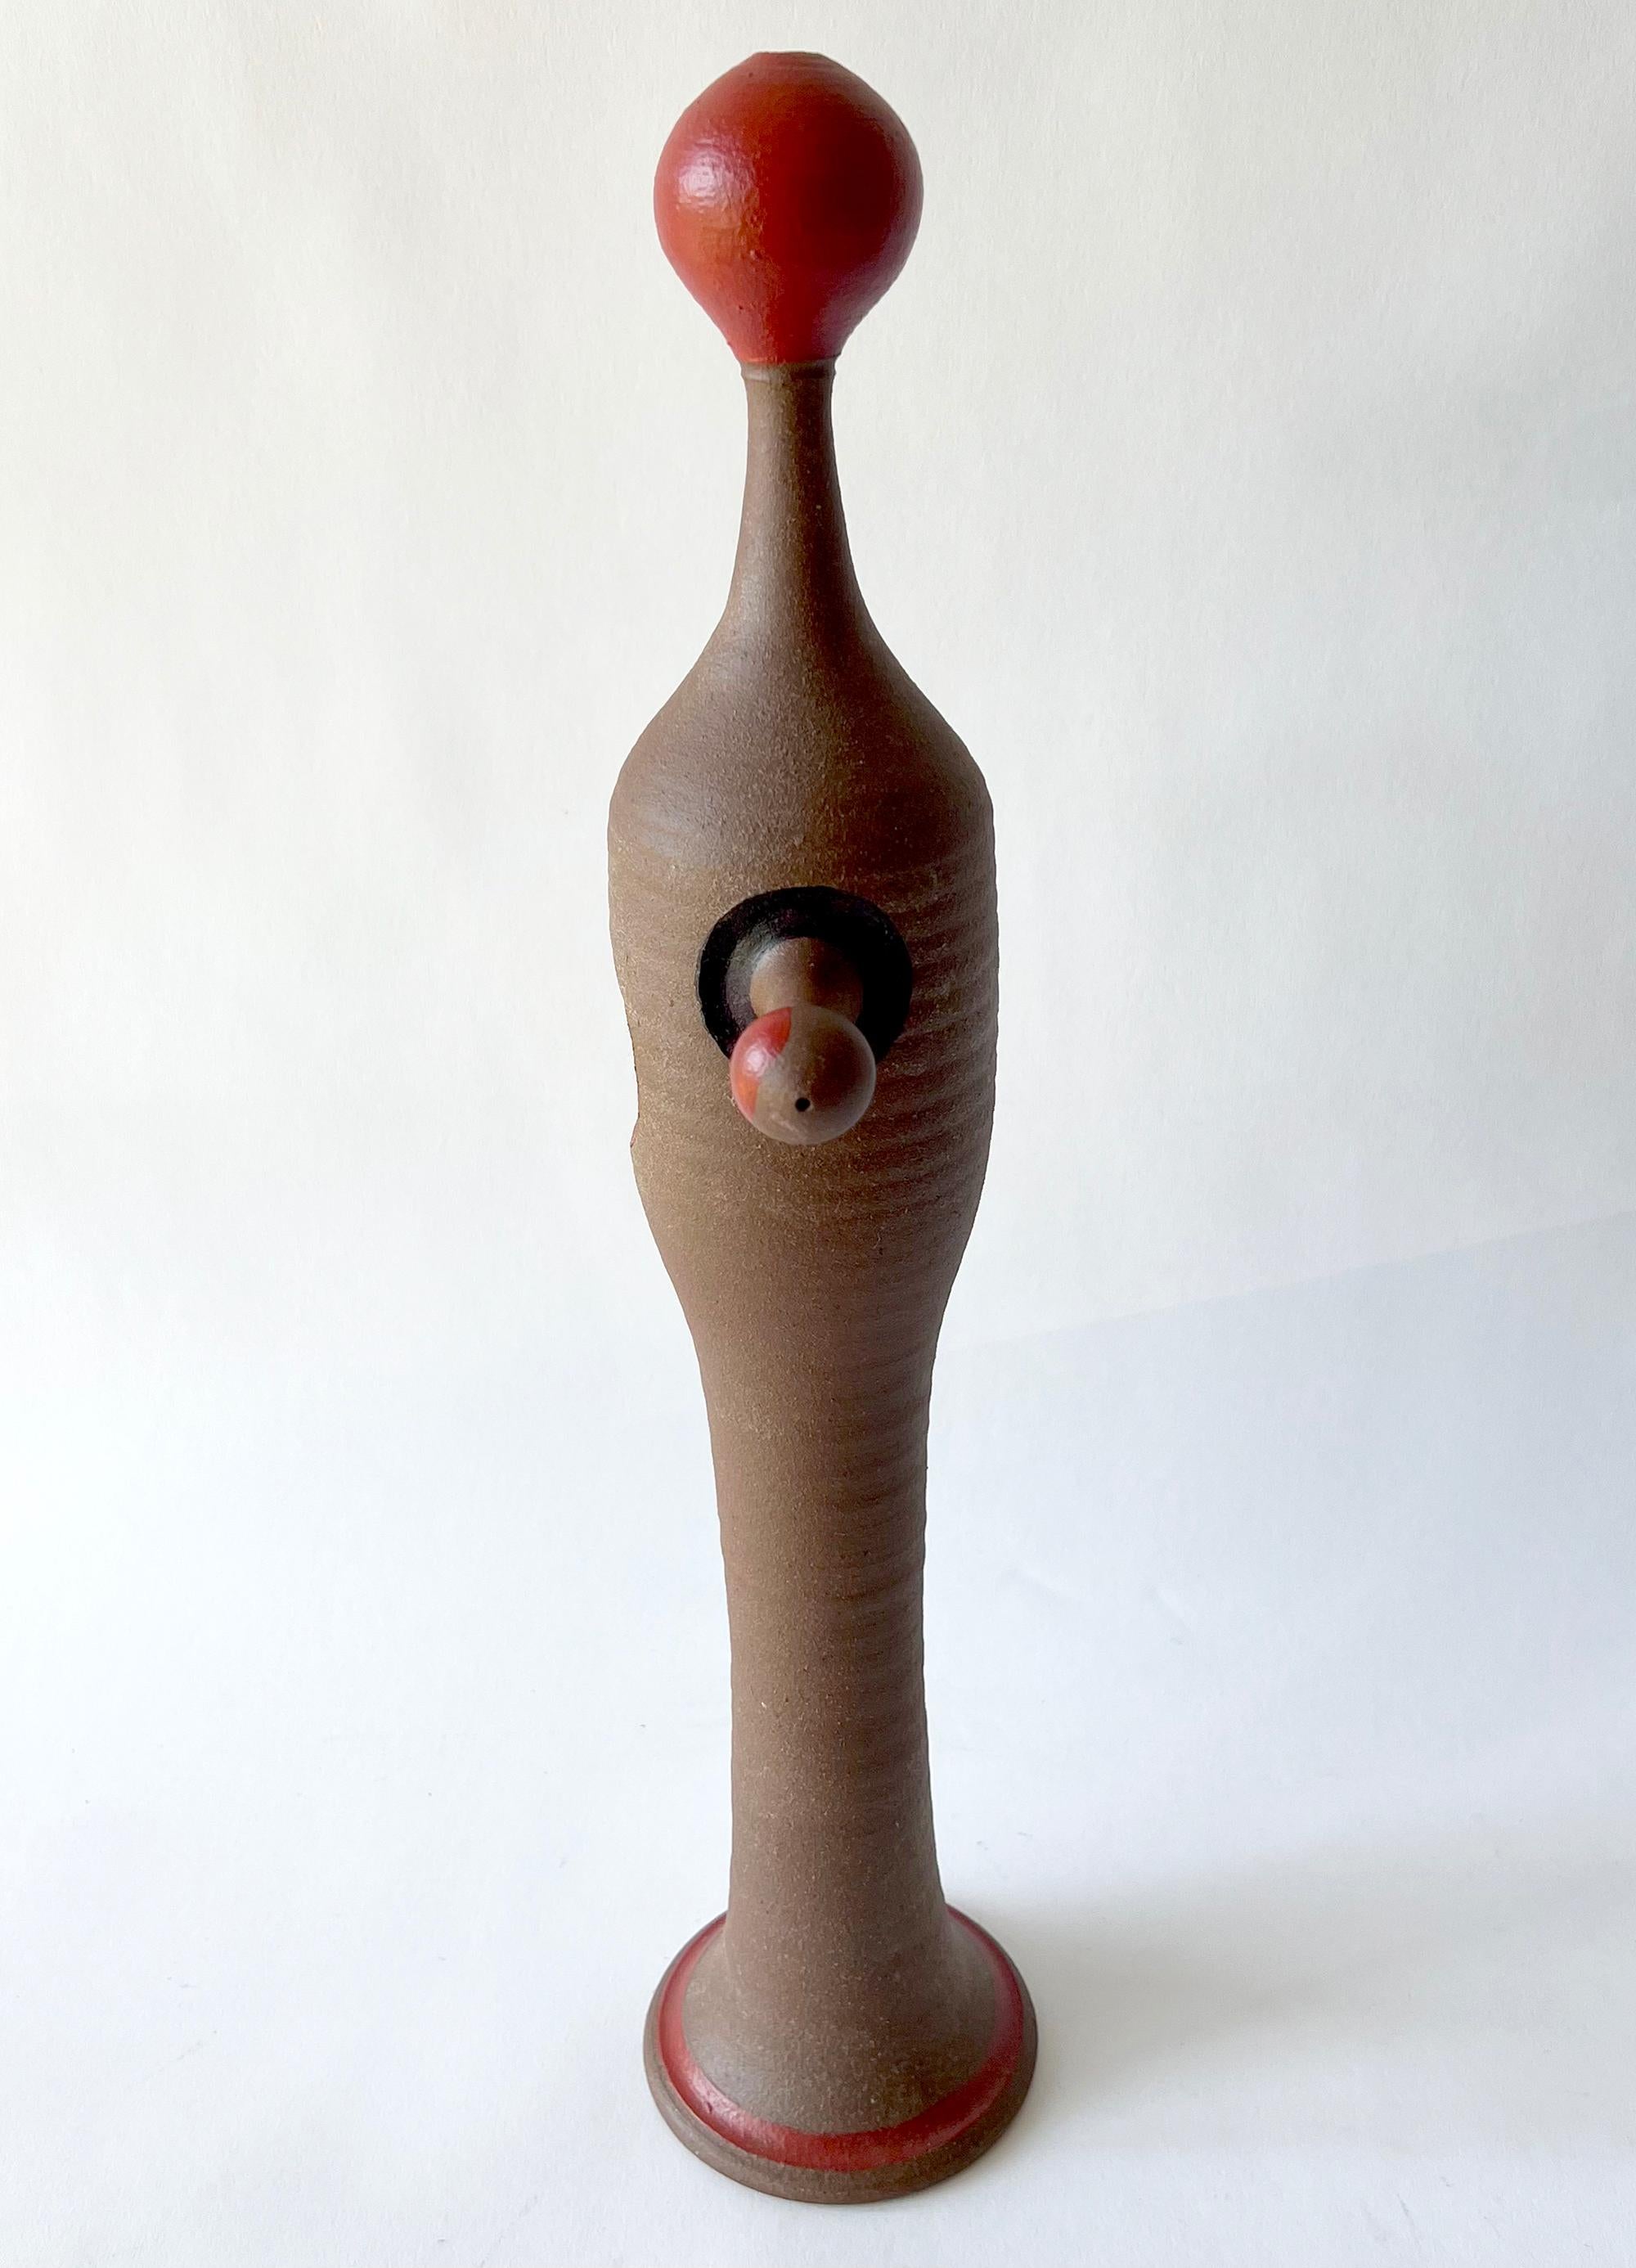 Handbemalte und gedrehte Keramikskulptur aus Feinsteinzeug, geschaffen von Jack Mason aus Stone Mountain, Georgia. Die Skulptur ist 18,5